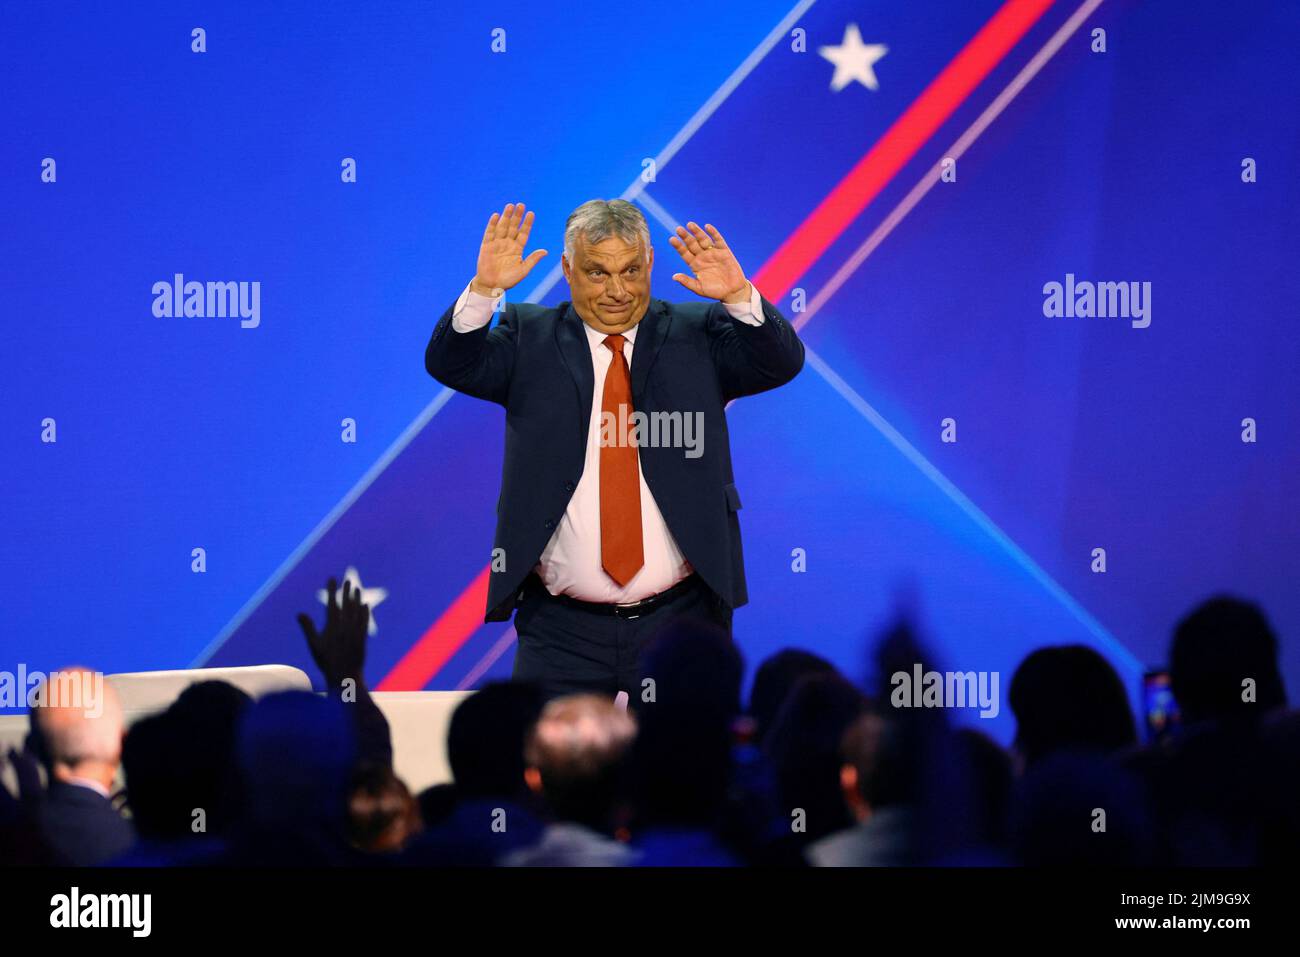 Viktor Orban, Primer Ministro de Hungría, hace gestos ante la audiencia después de hablar en la Conferencia de Acción Política Conservadora (CPAC) en Dallas, Texas, EE.UU., 4 de agosto de 2022. REUTERS/Brian Snyder Foto de stock